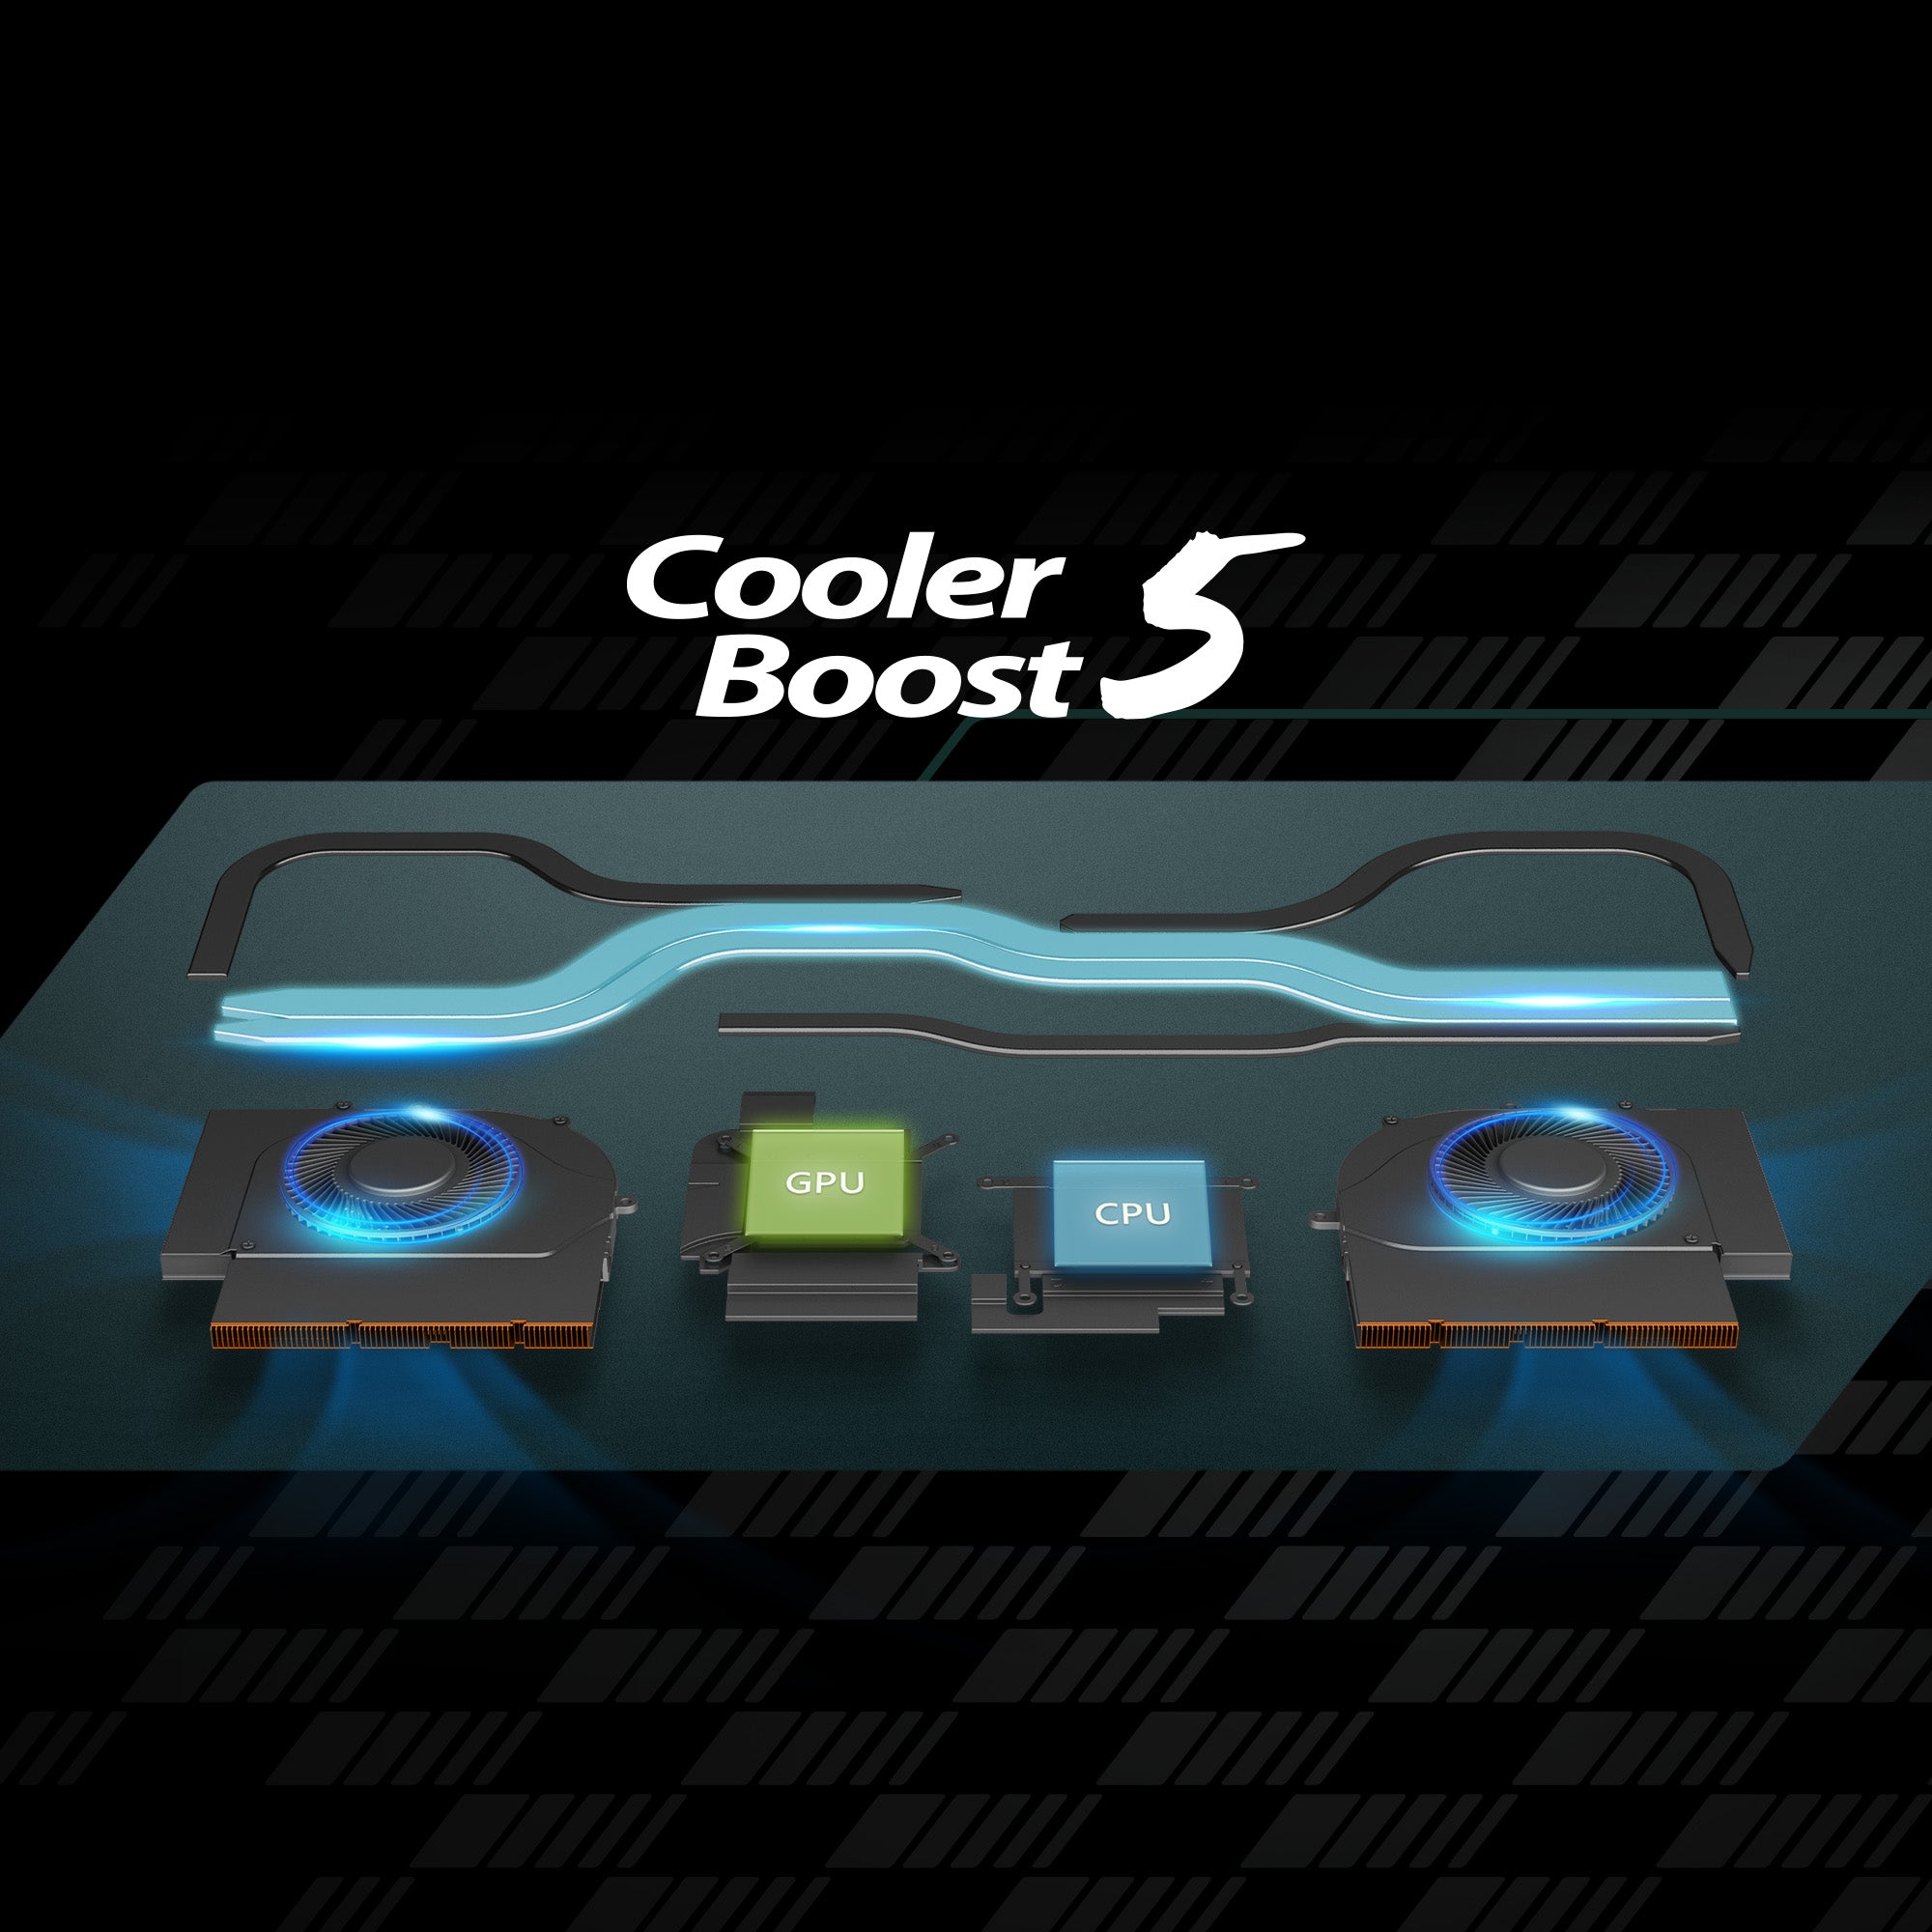 採用全新設計的 Cooler Boost 5散熱模組，包含兩組風扇與五根散熱導管，其中兩根散熱導管同時通過CPU和GPU